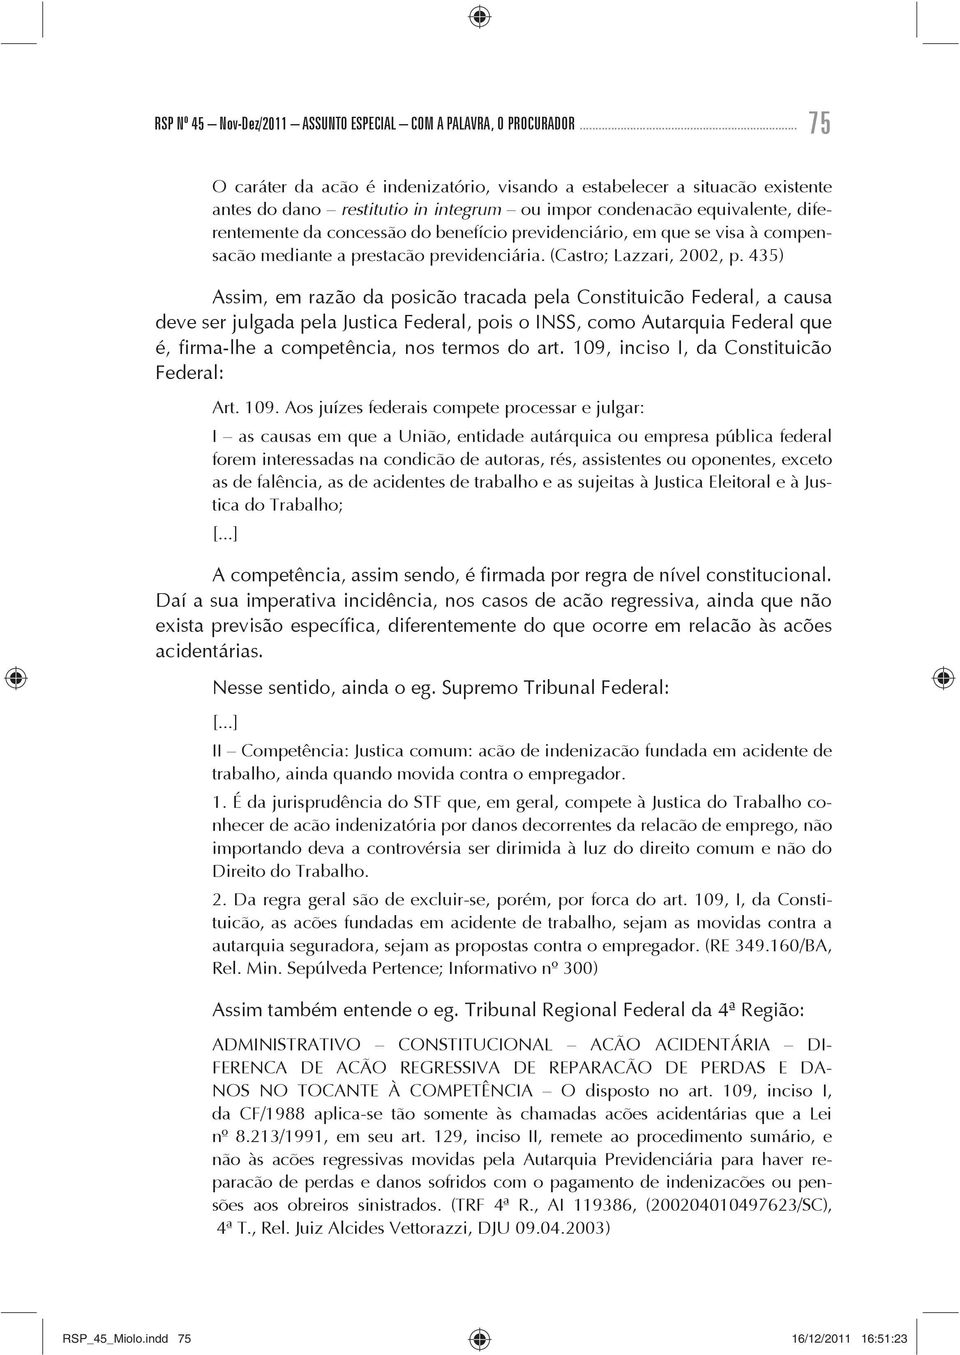 previdenciário, em que se visa à compensação mediante a prestação previdenciária. (Castro; Lazzari, 2002, p.